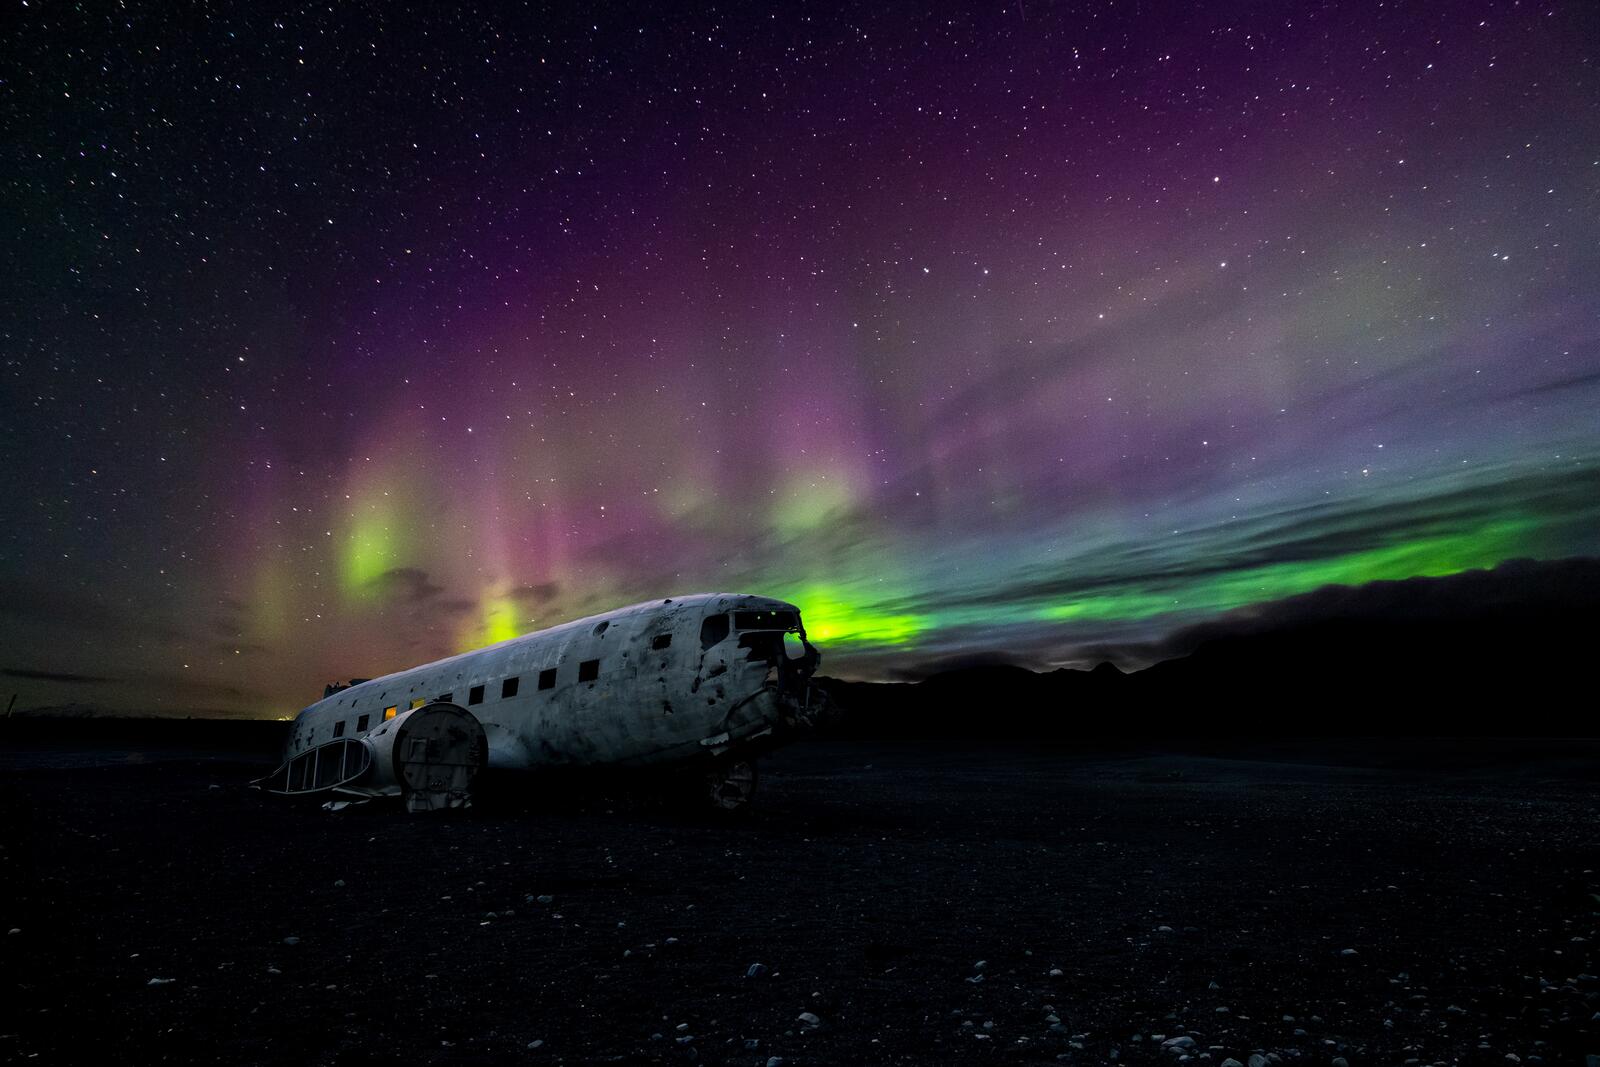 Бесплатное фото Разрушенный самолет на фоне ночного неба с северным сиянием